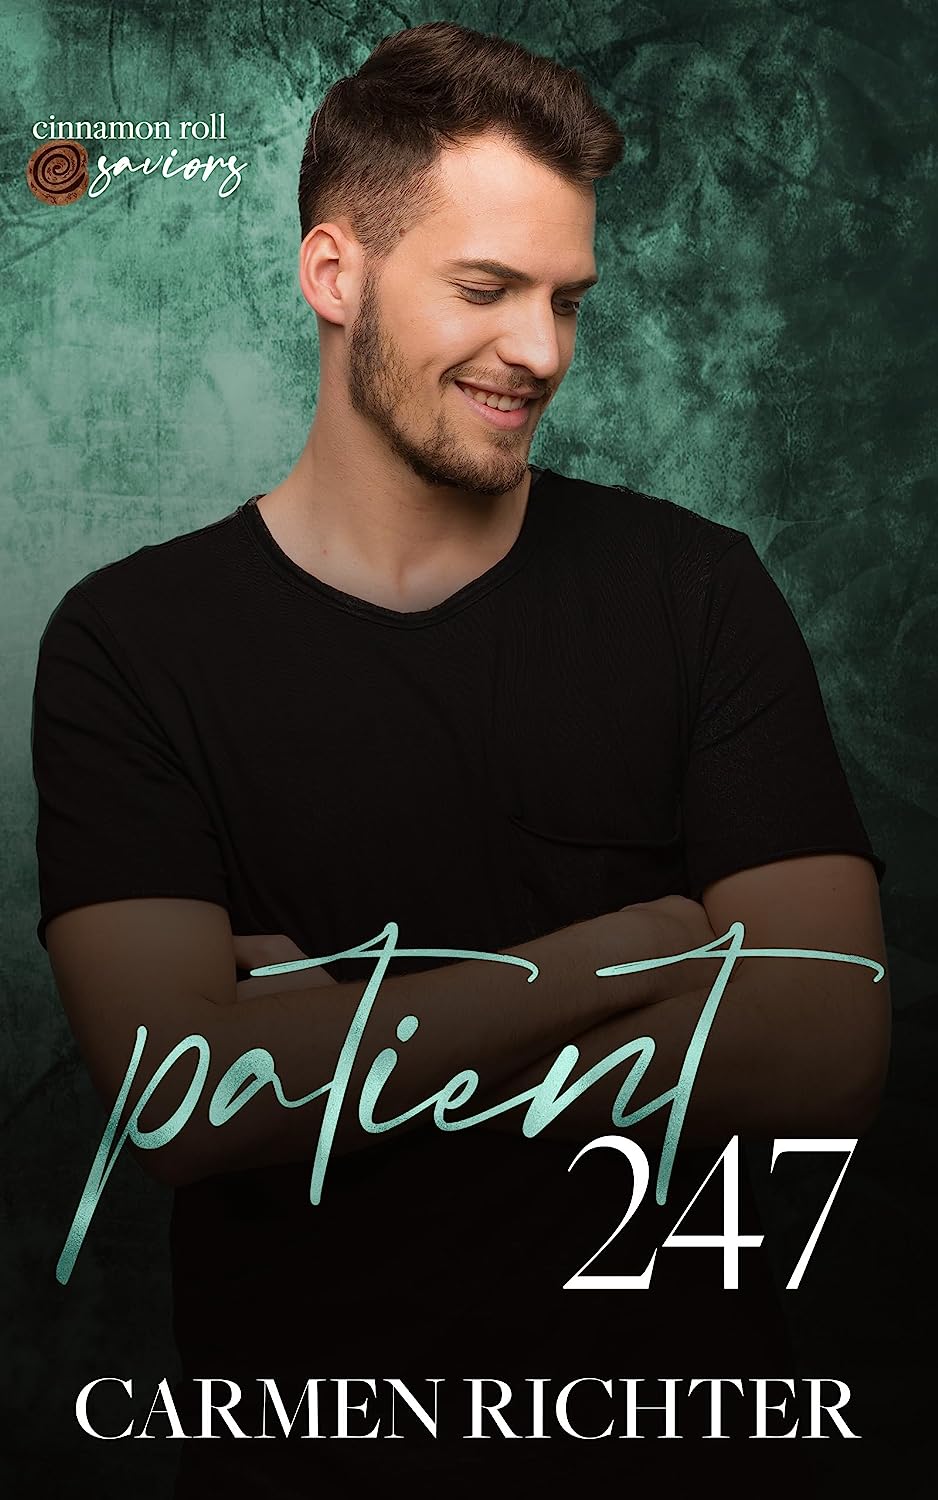 Patient 247